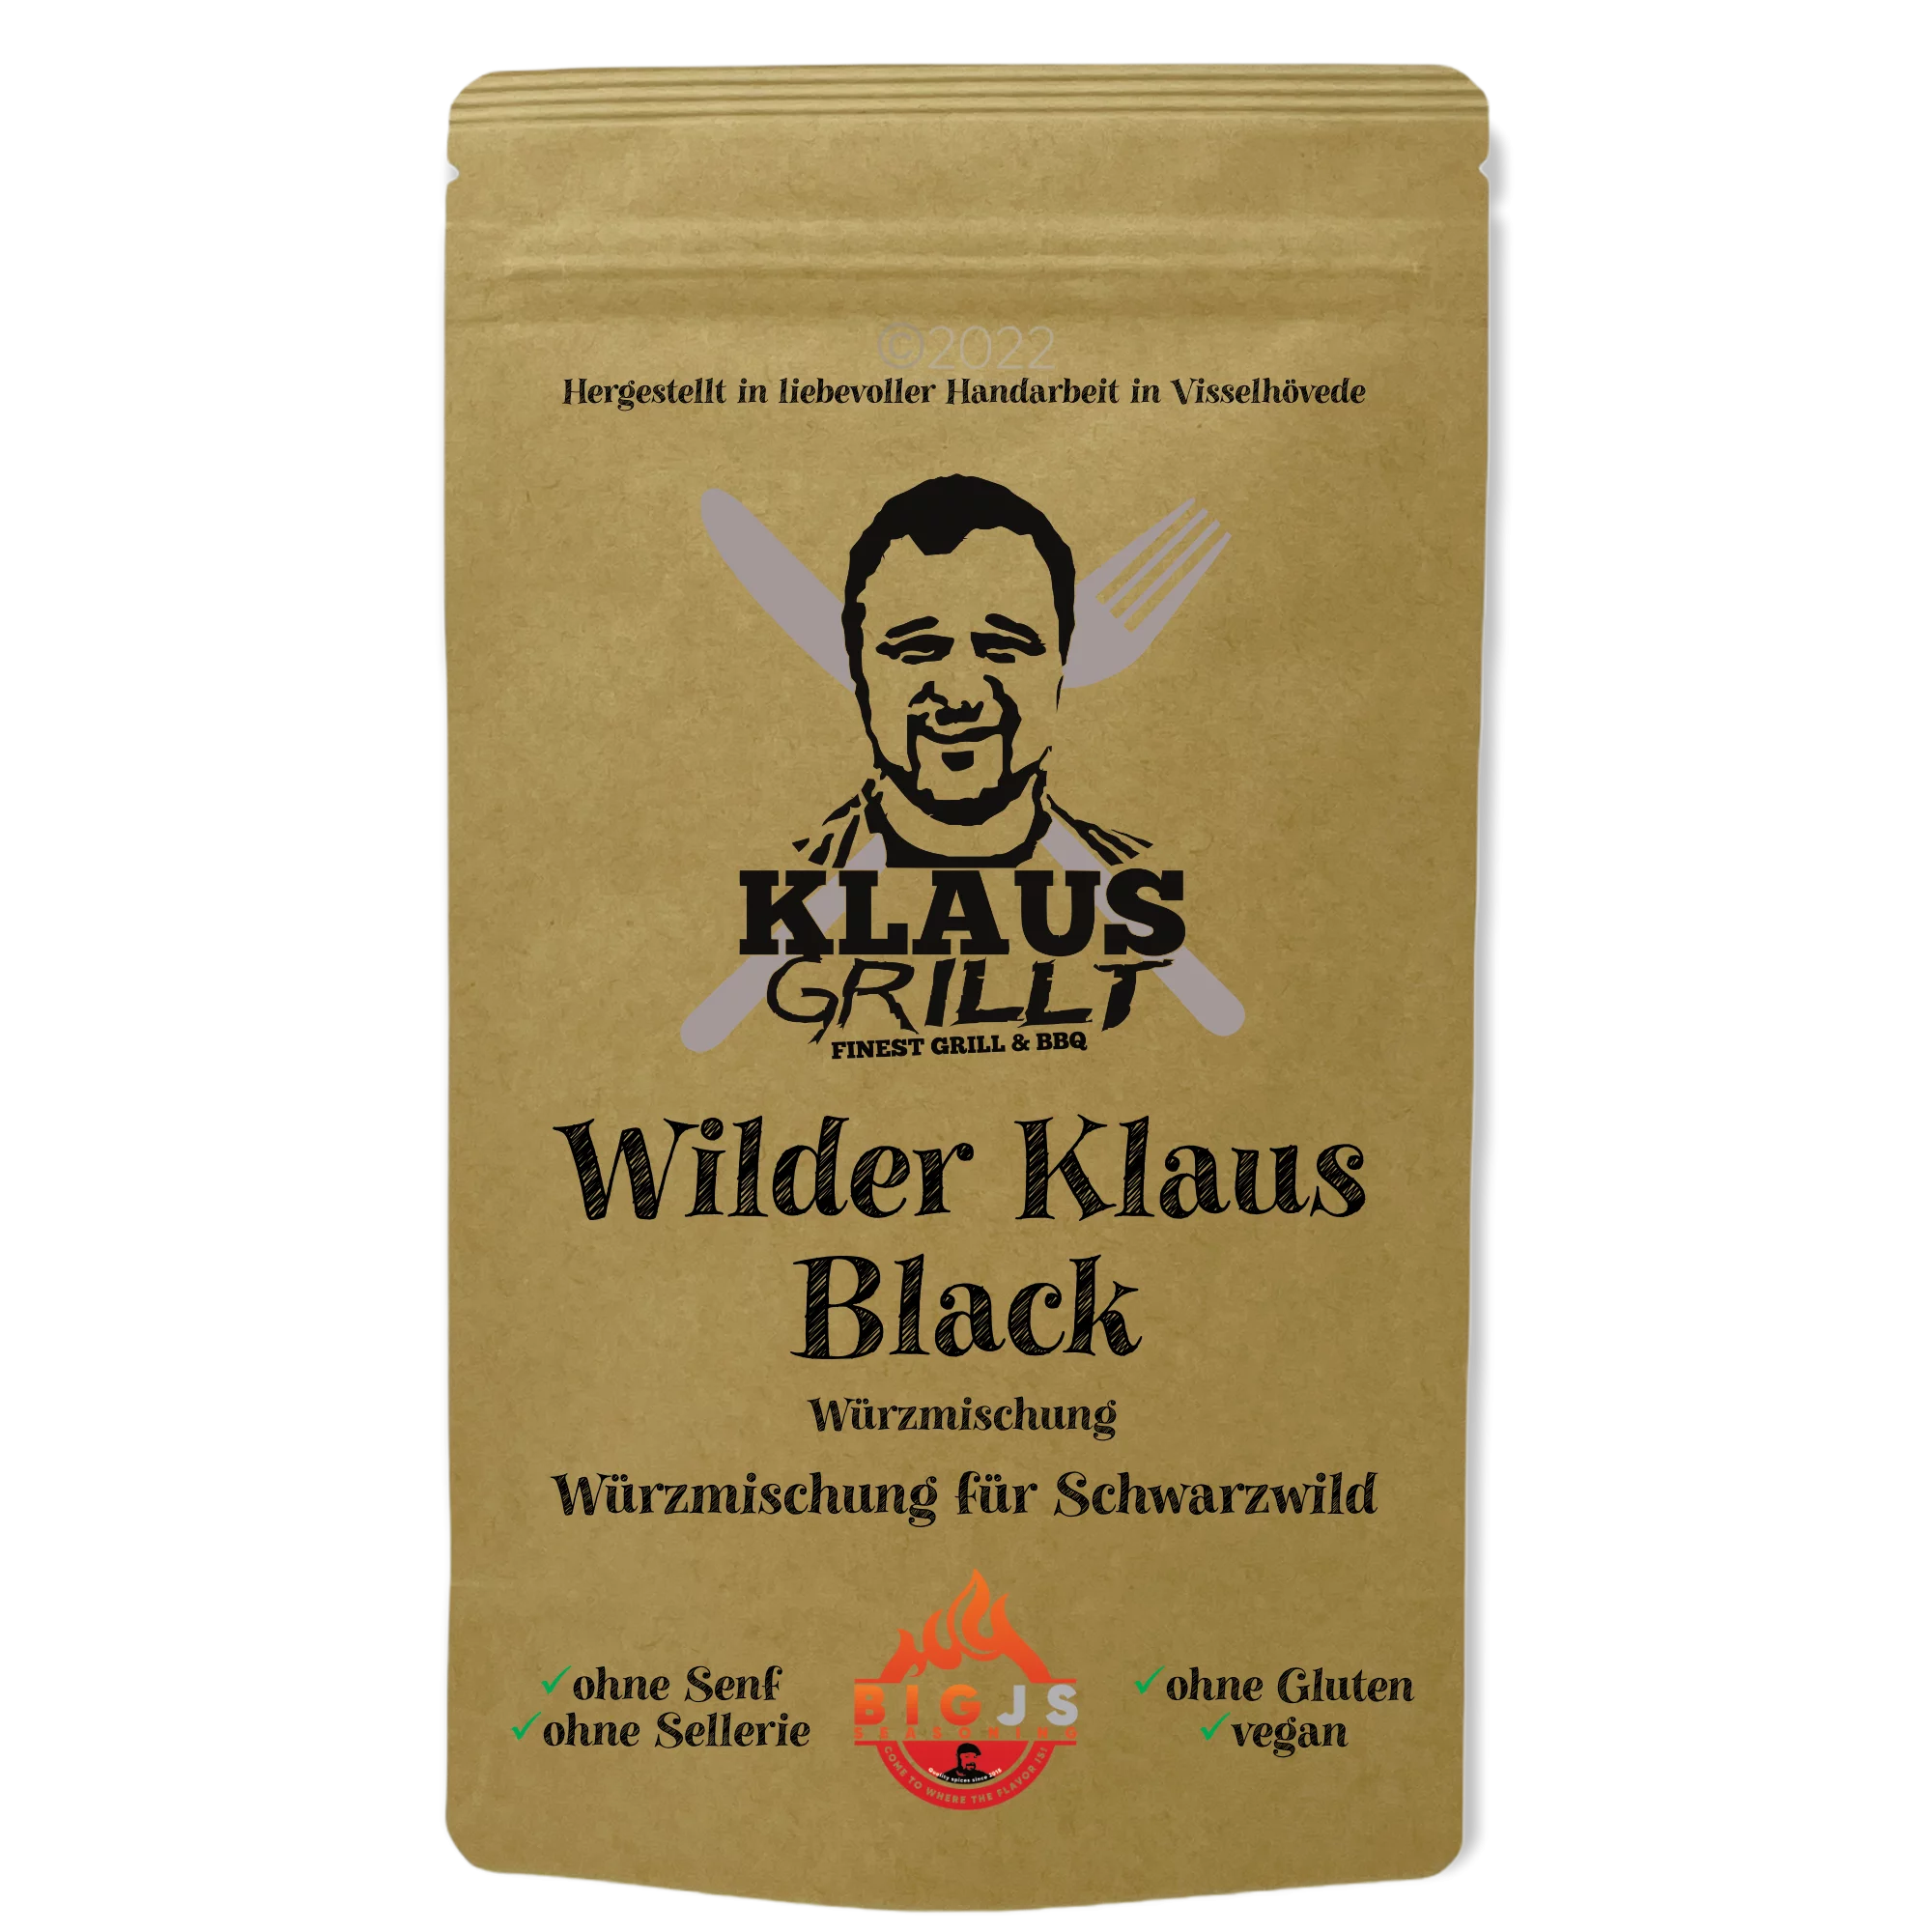 Klaus grillt Wilder Klaus Black 150g Beutel